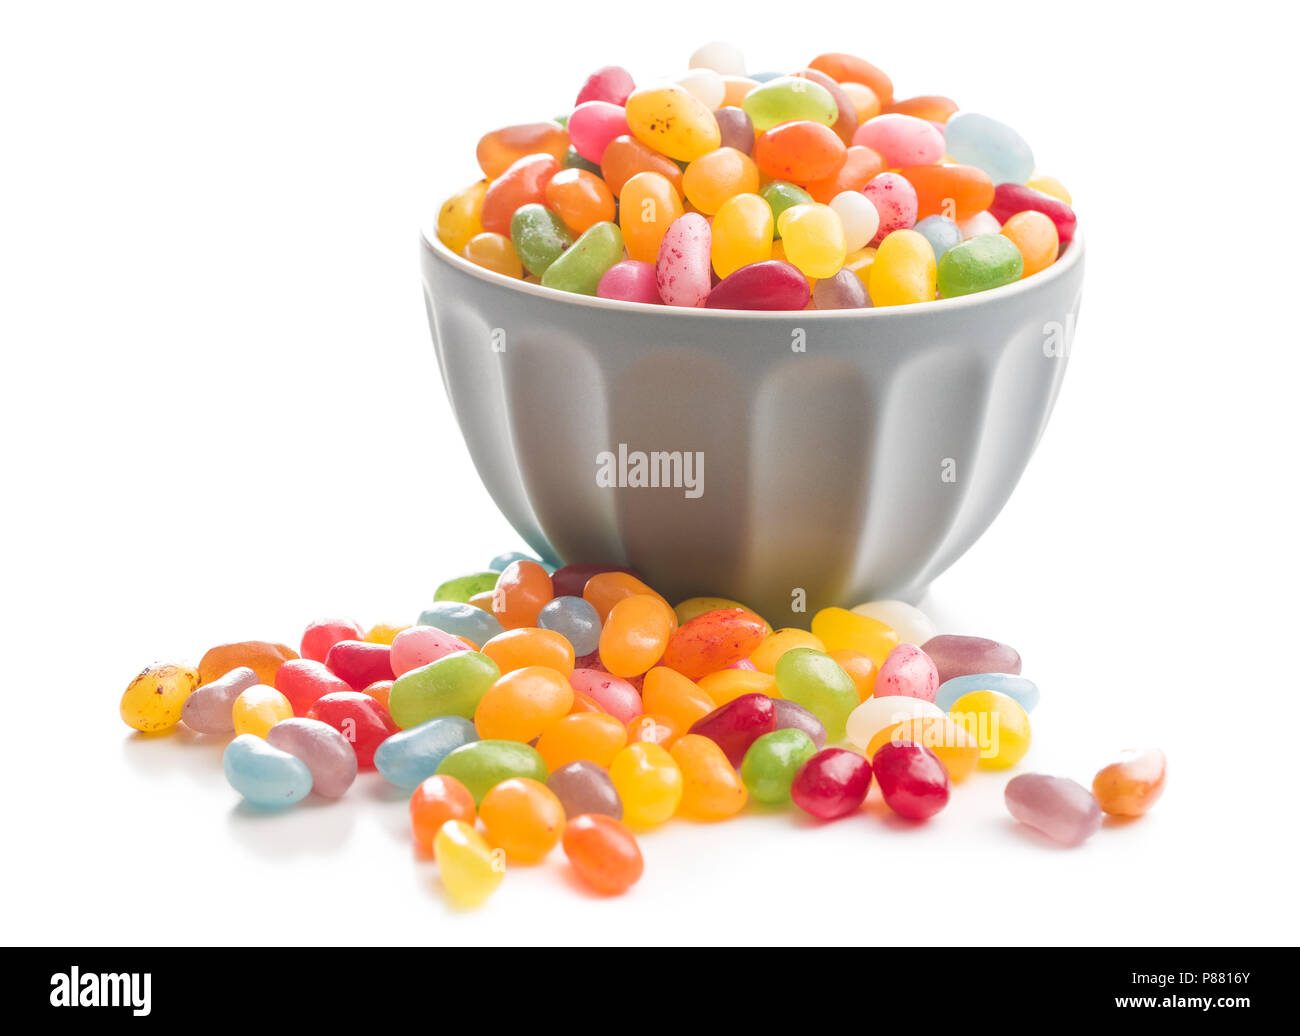 Sweet jelly beans dans bol isolé sur fond blanc. Banque D'Images